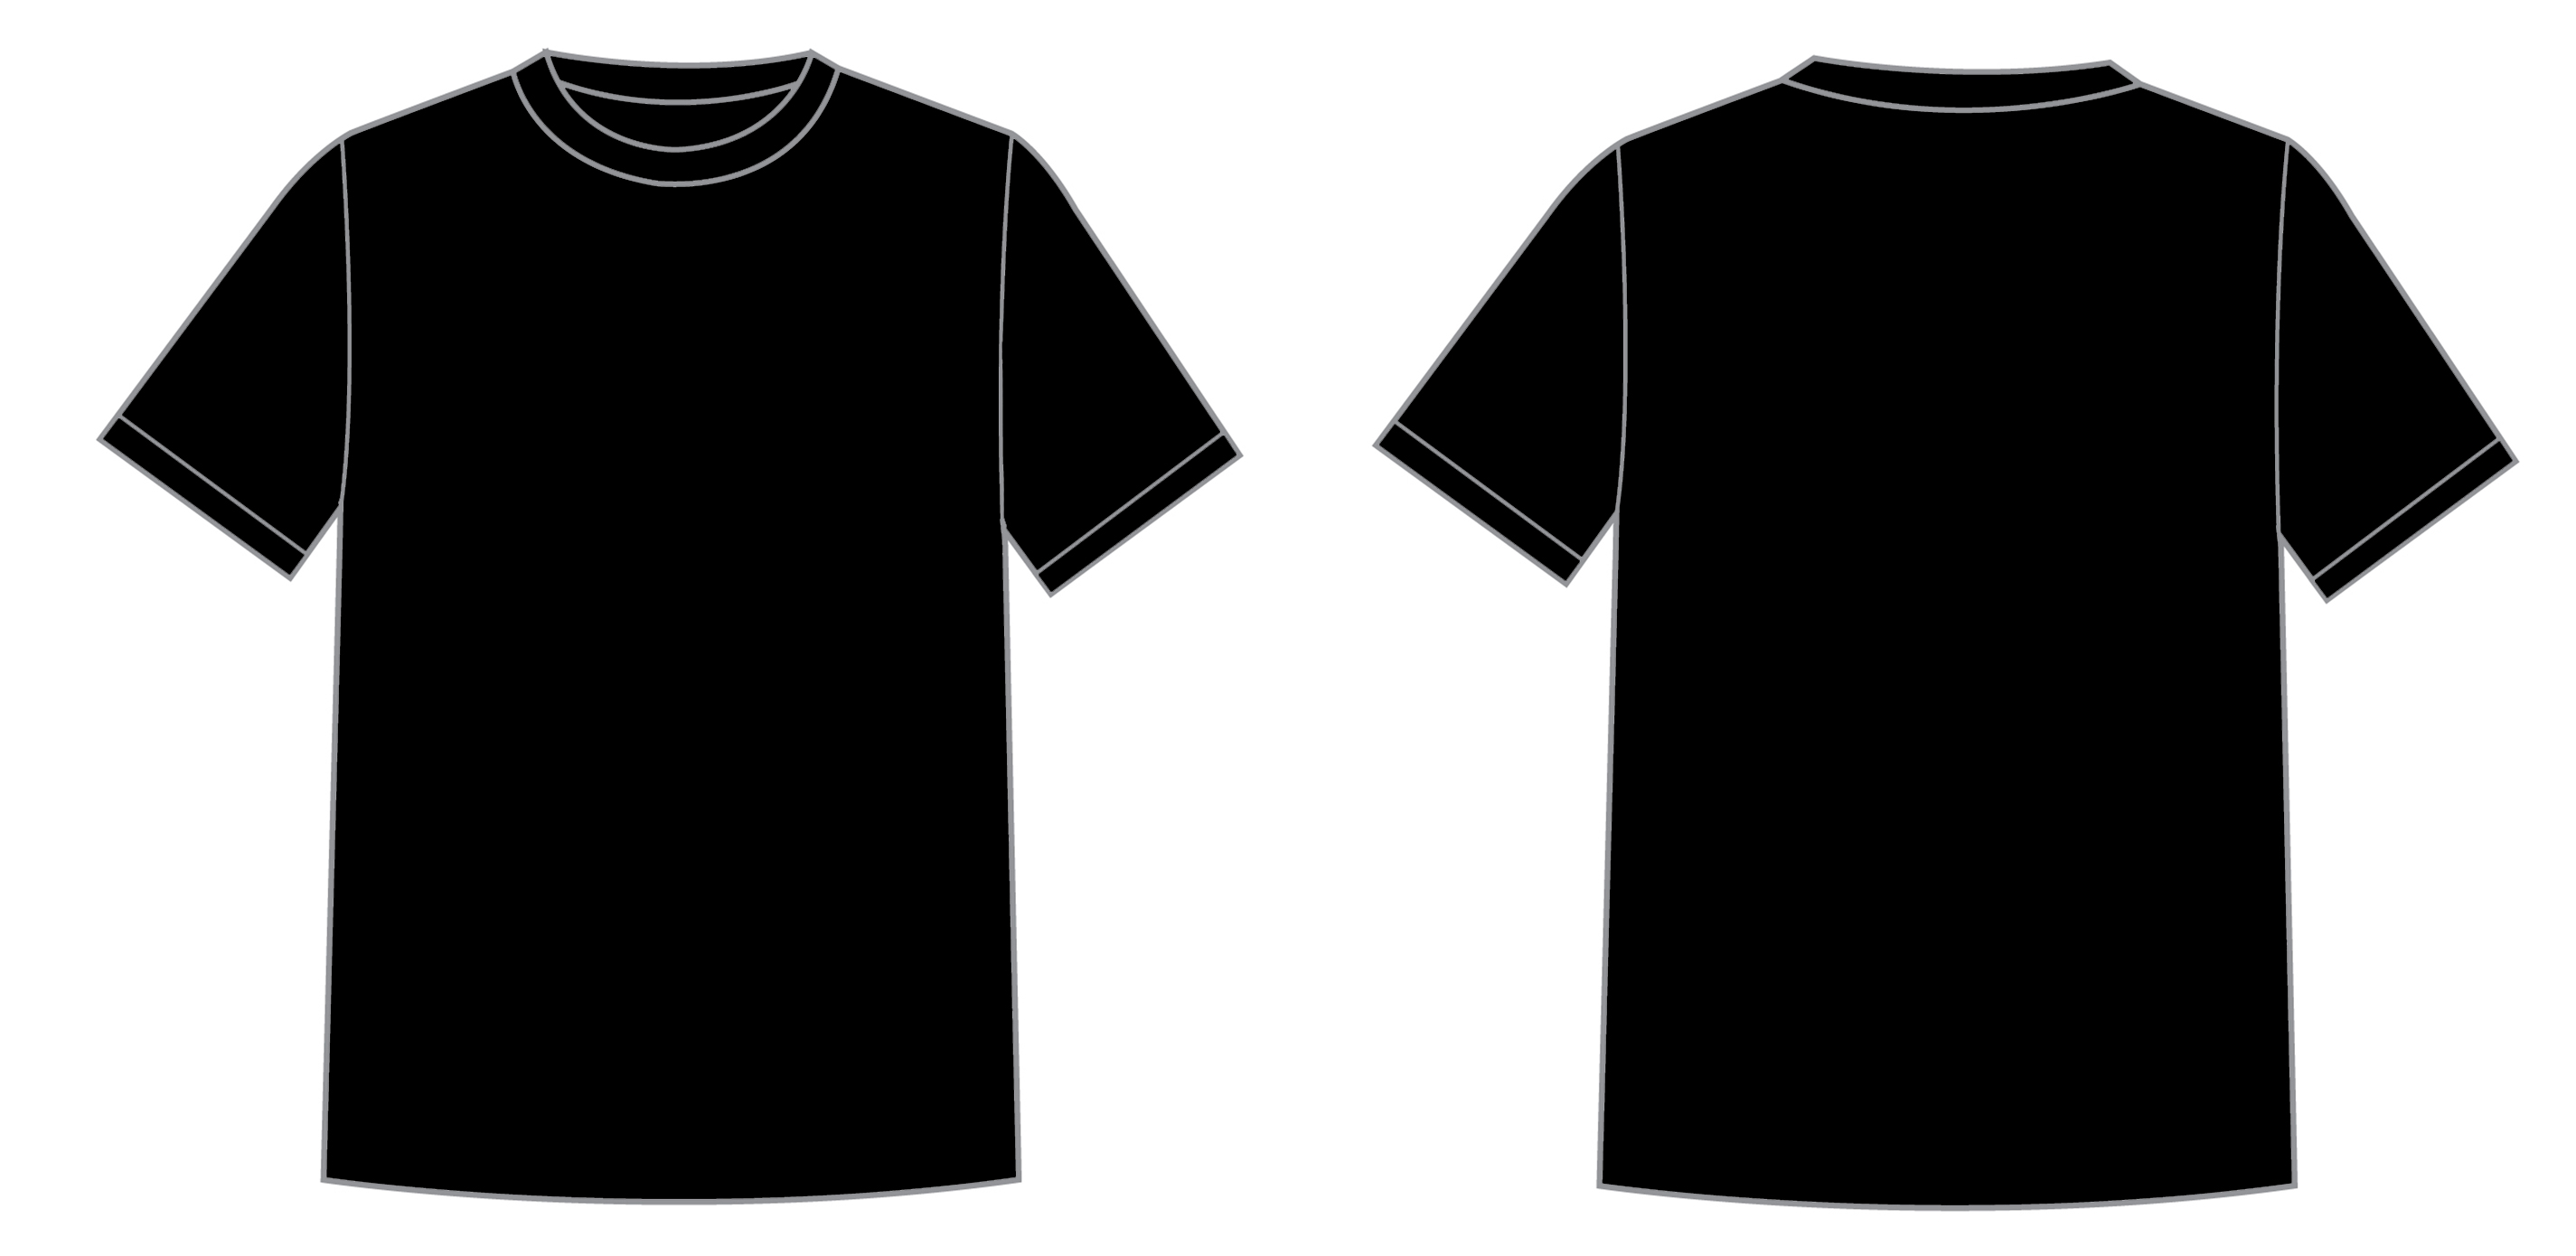 3FREUNDE Unisex T Shirt schwarz back | Pictureicon